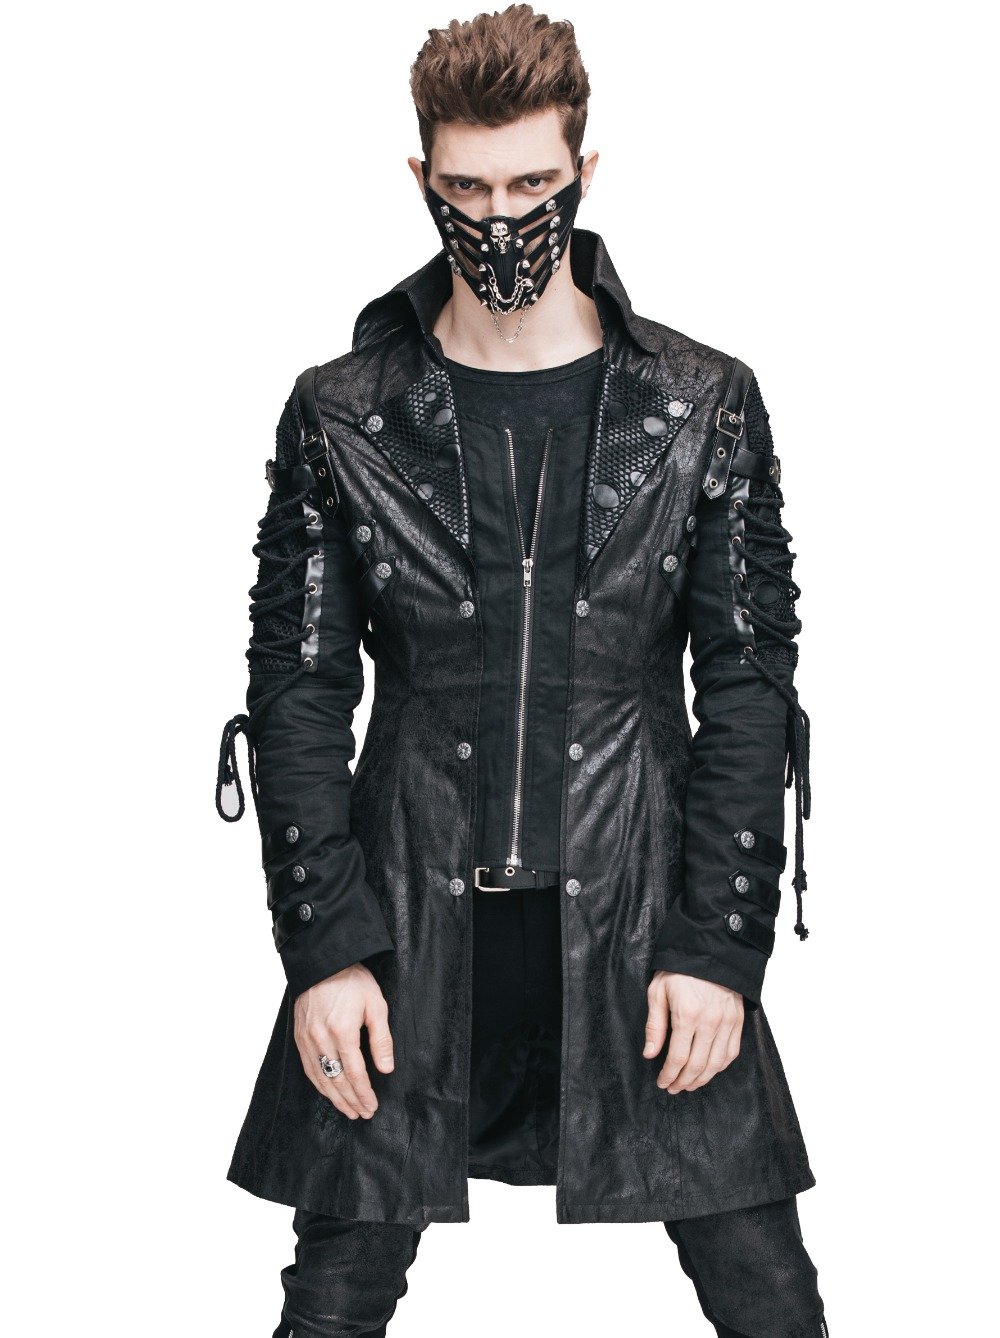 Cyberpunk стиль одежды мужской (120) фото